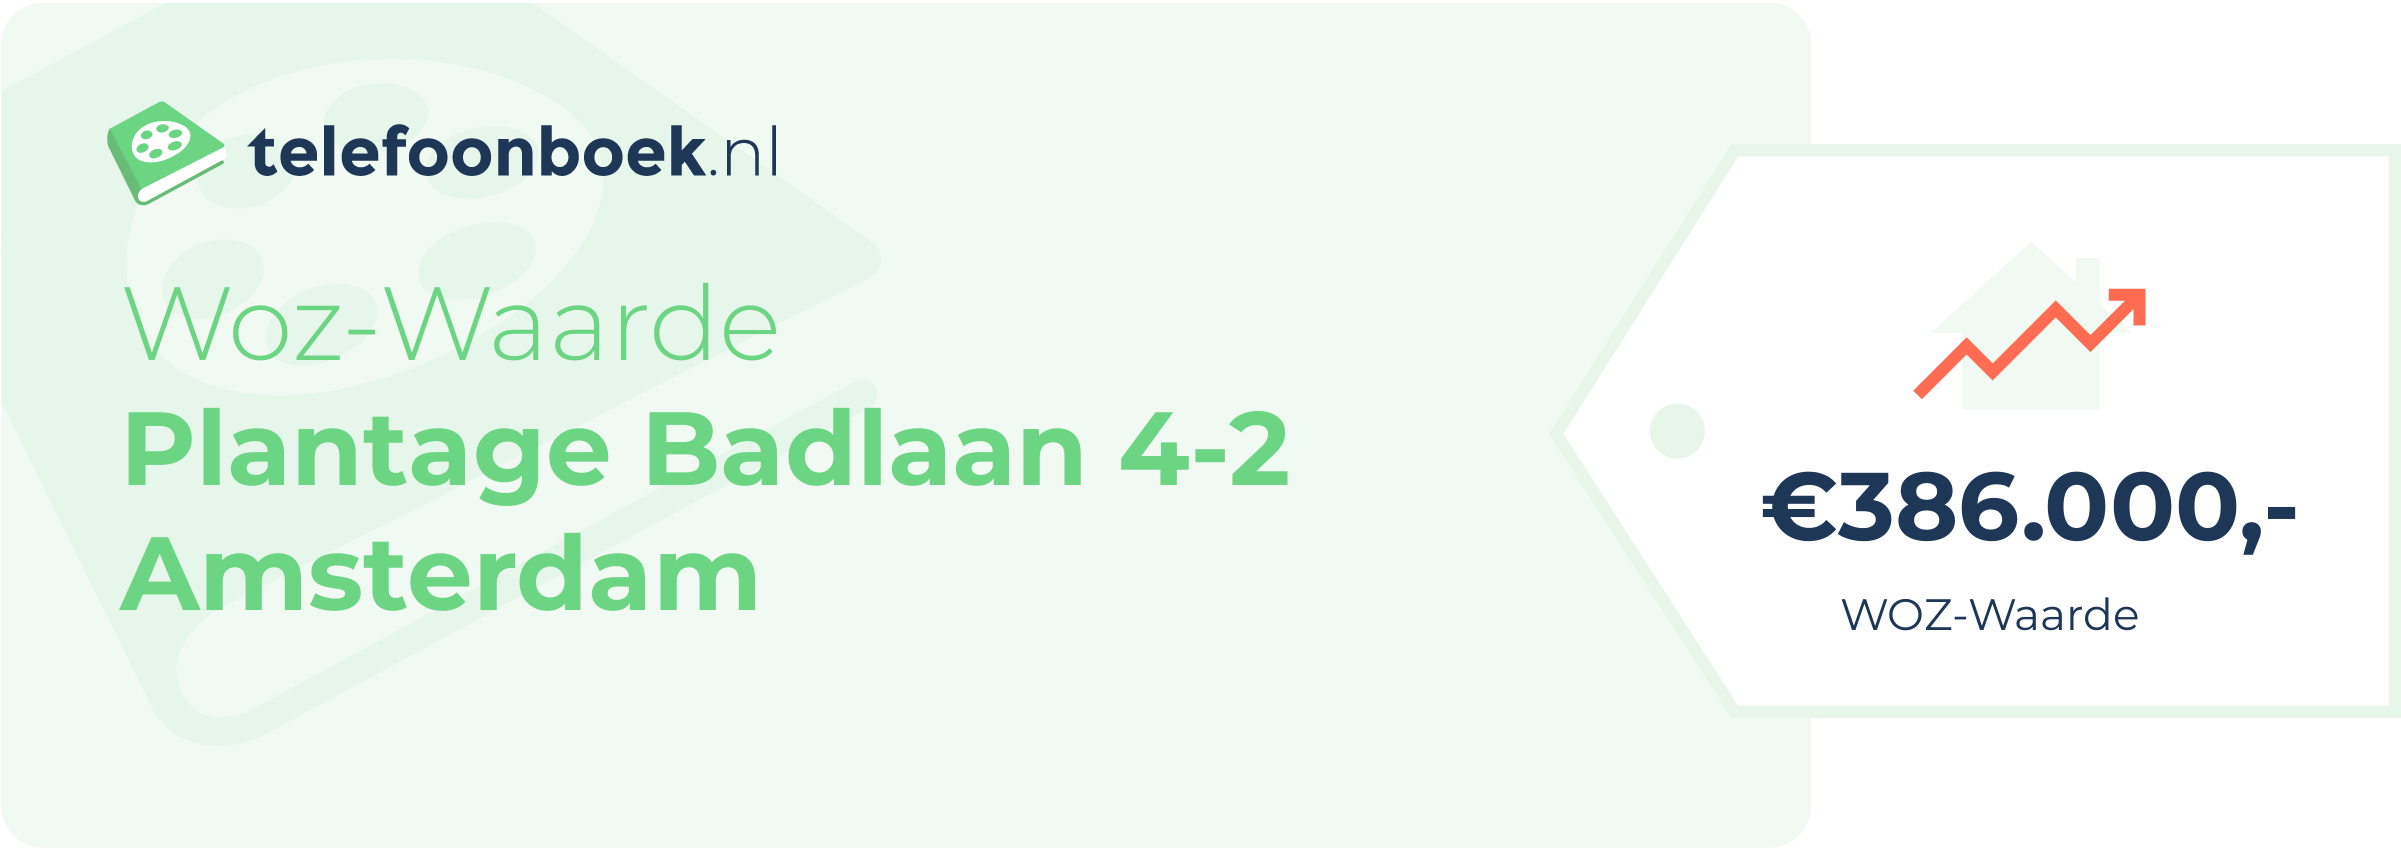 WOZ-waarde Plantage Badlaan 4-2 Amsterdam